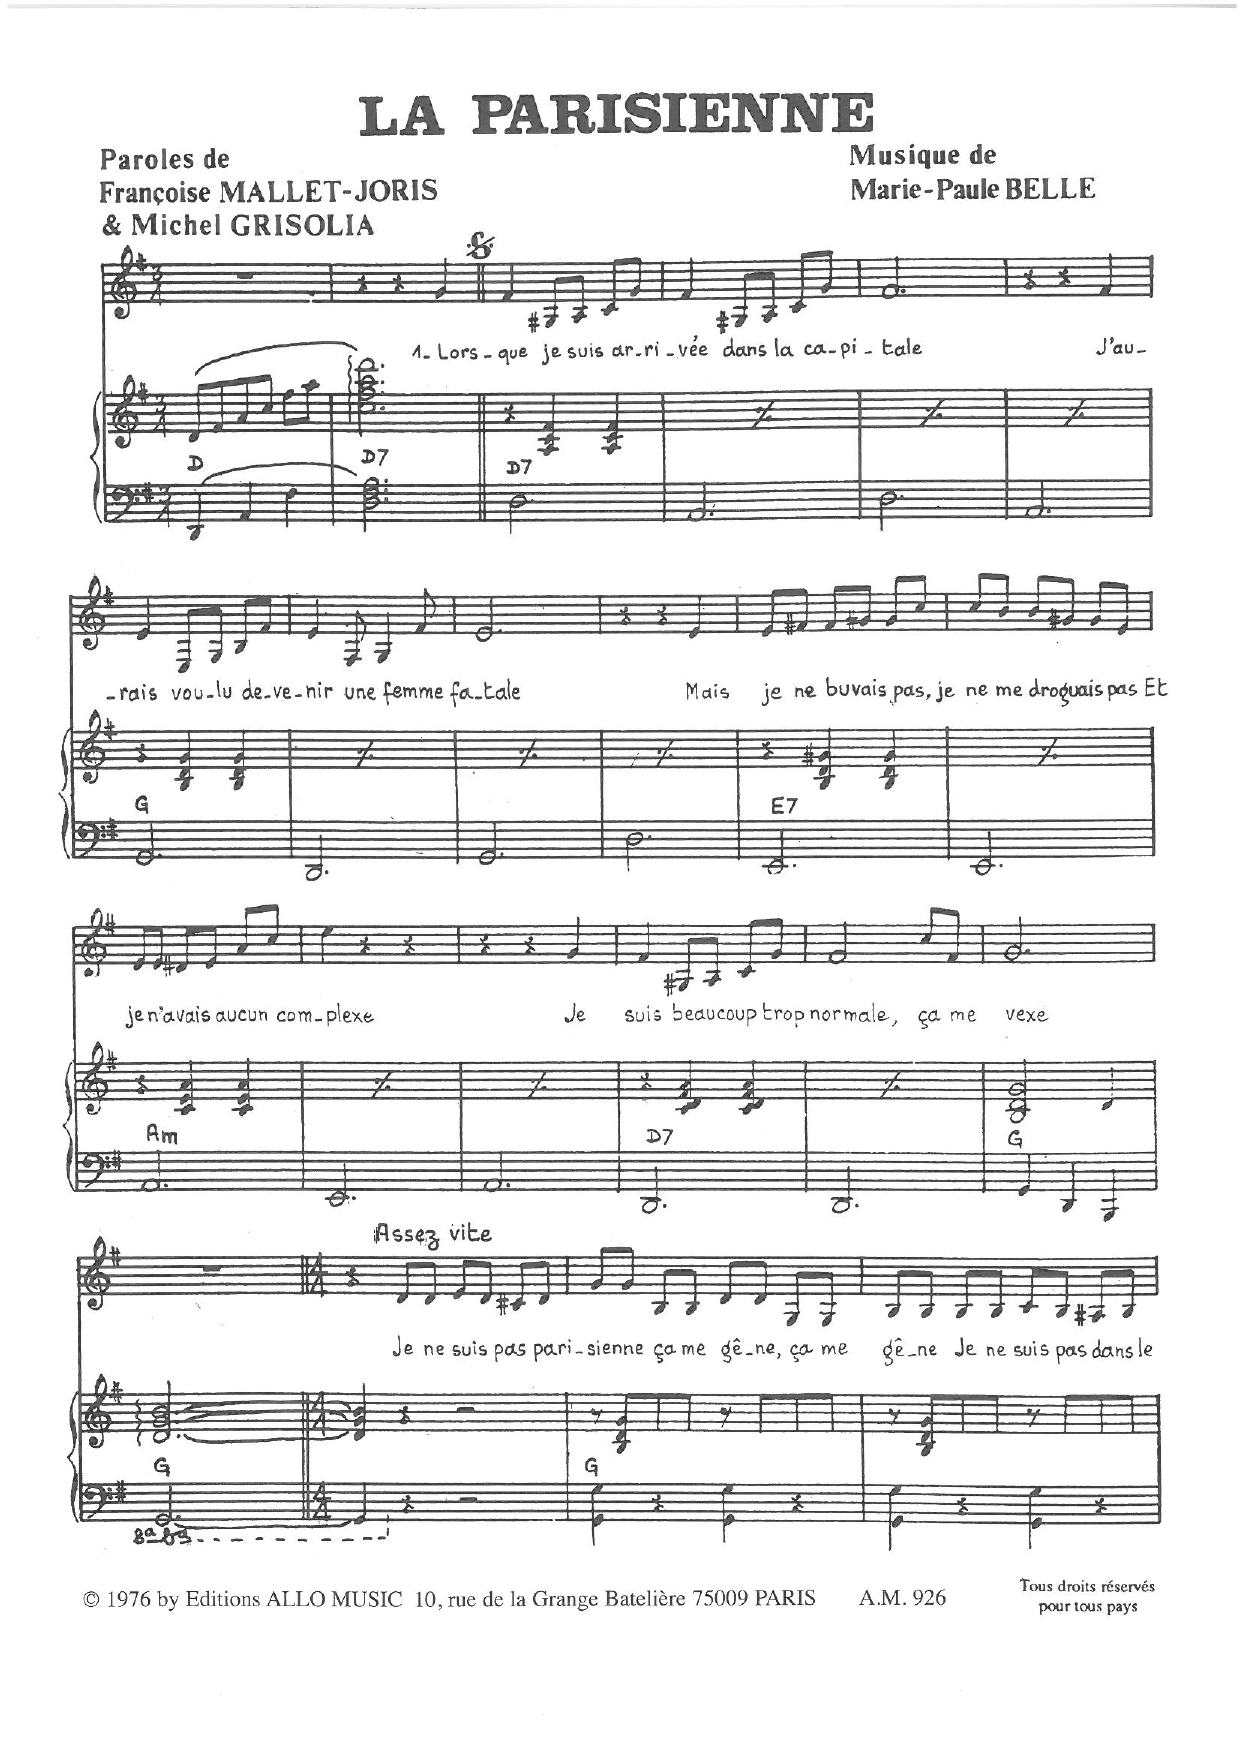 Michel Grisolia, Françoise Mallet-Joris and Marie Paule Belle La Parisienne Sheet Music Notes & Chords for Piano & Vocal - Download or Print PDF